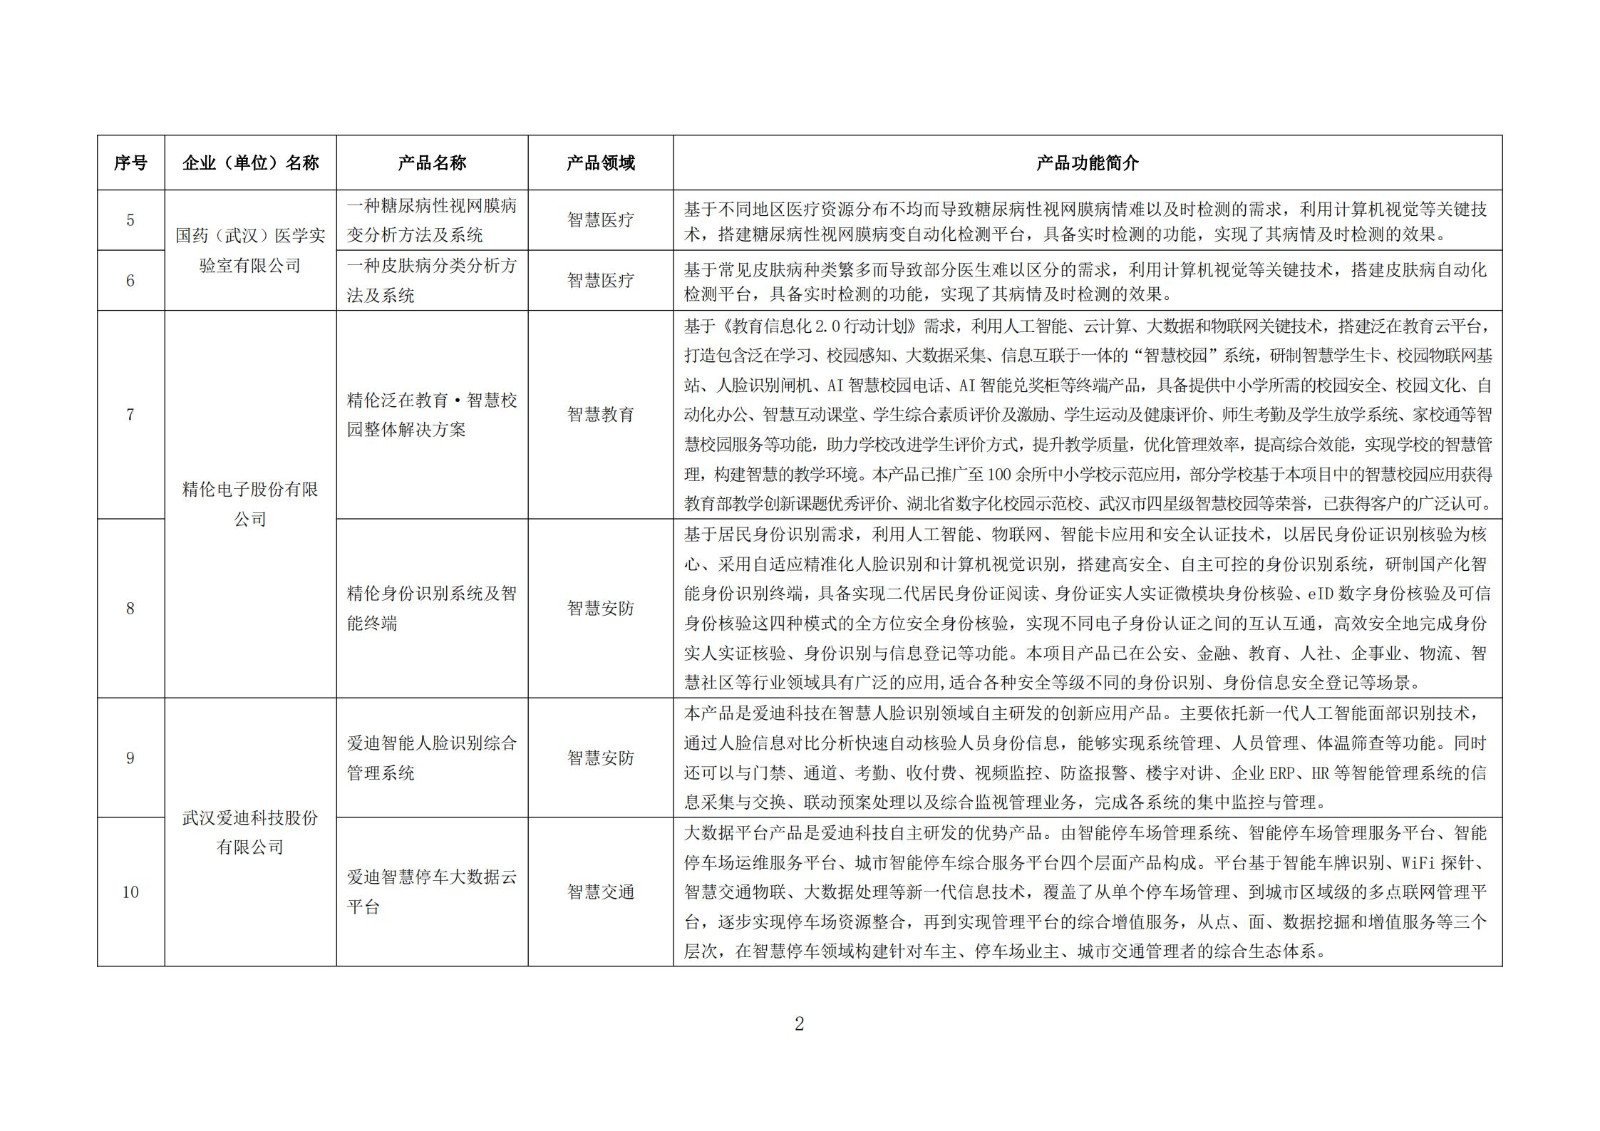 武汉新一代人工智能产品目录（首批）_01.jpg